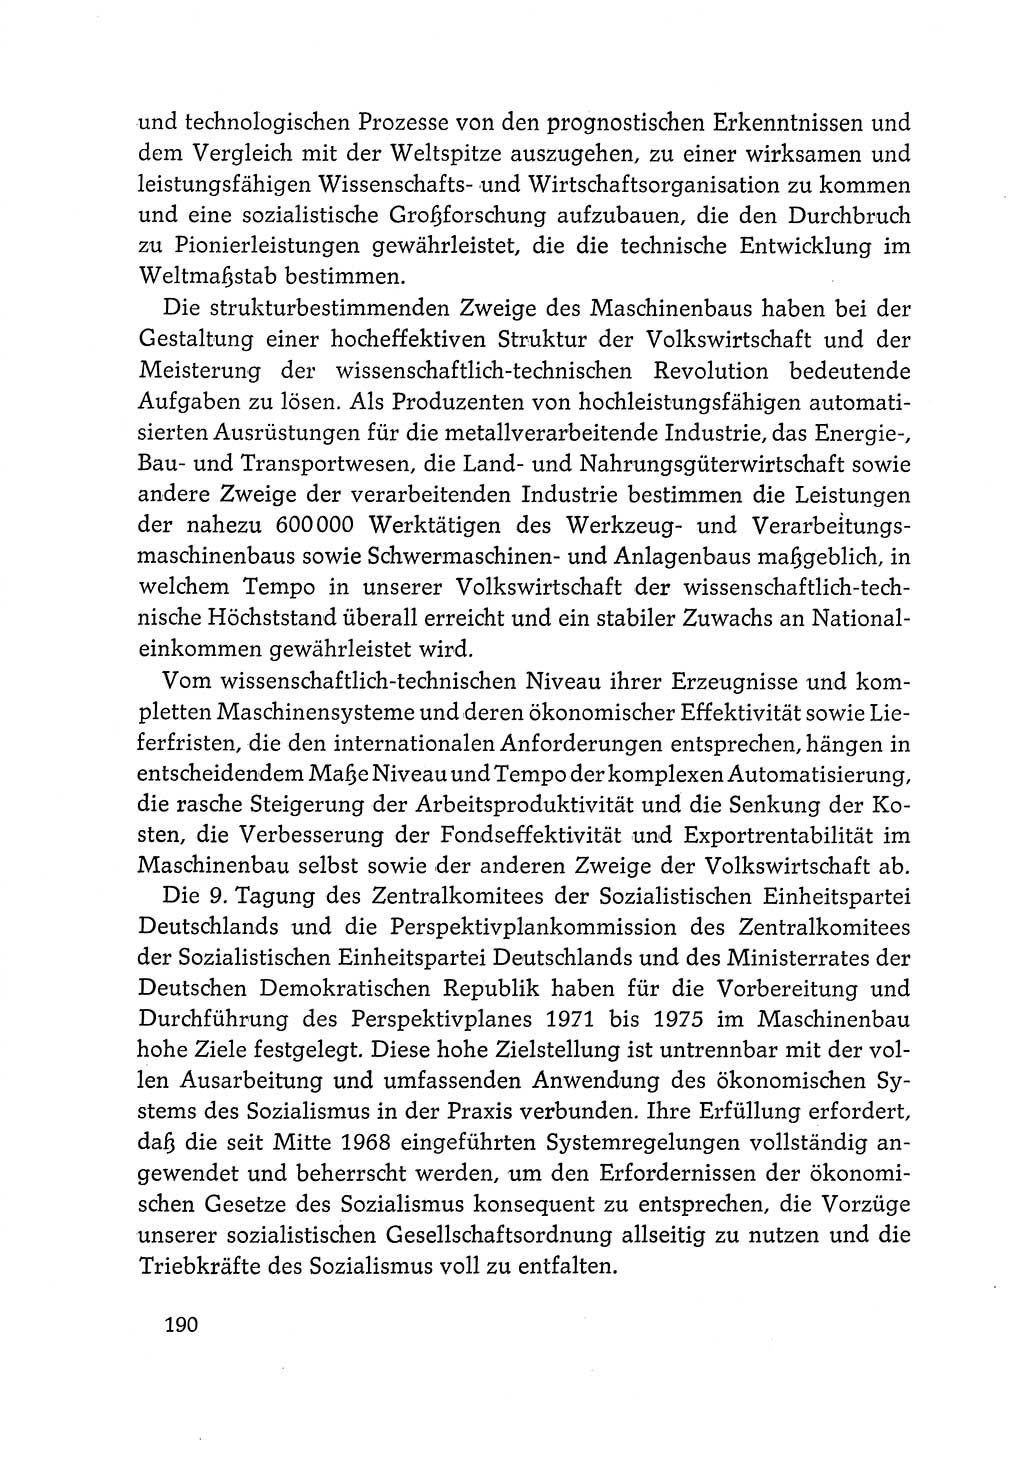 Dokumente der Sozialistischen Einheitspartei Deutschlands (SED) [Deutsche Demokratische Republik (DDR)] 1968-1969, Seite 190 (Dok. SED DDR 1968-1969, S. 190)